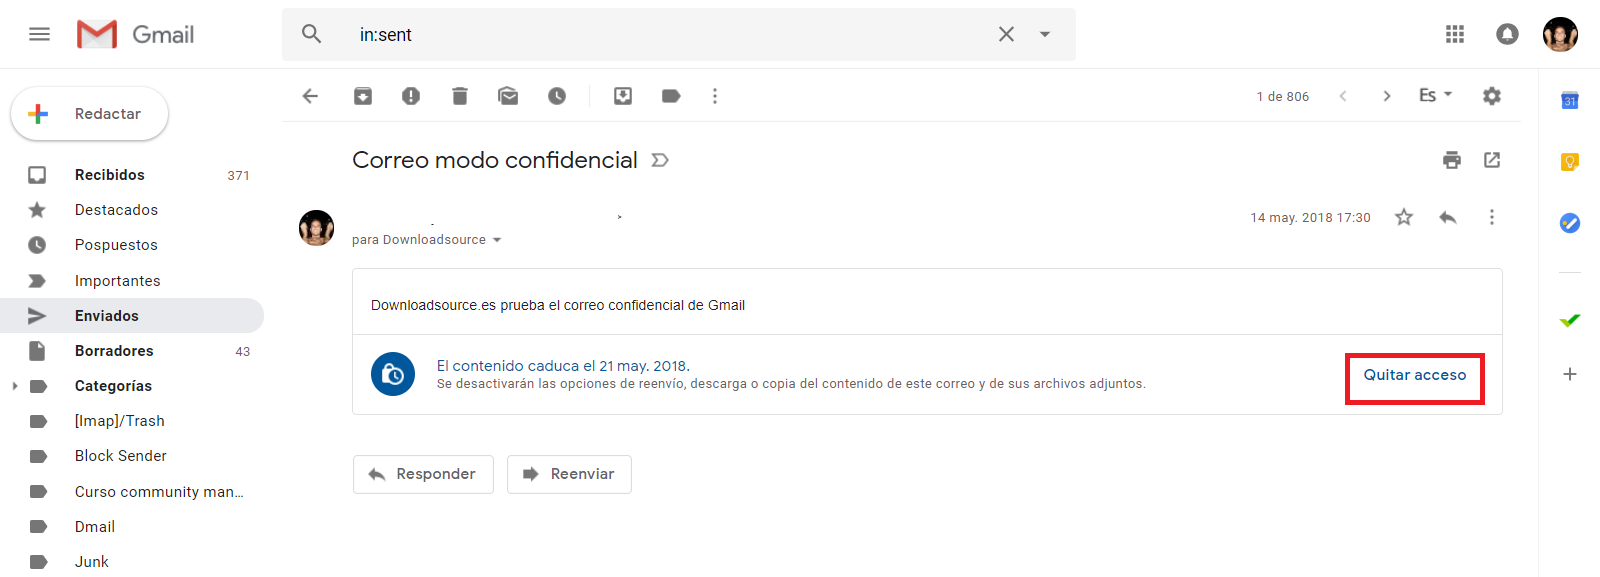 correos electrónicos seguros y privados con el modo confidencial de gmail